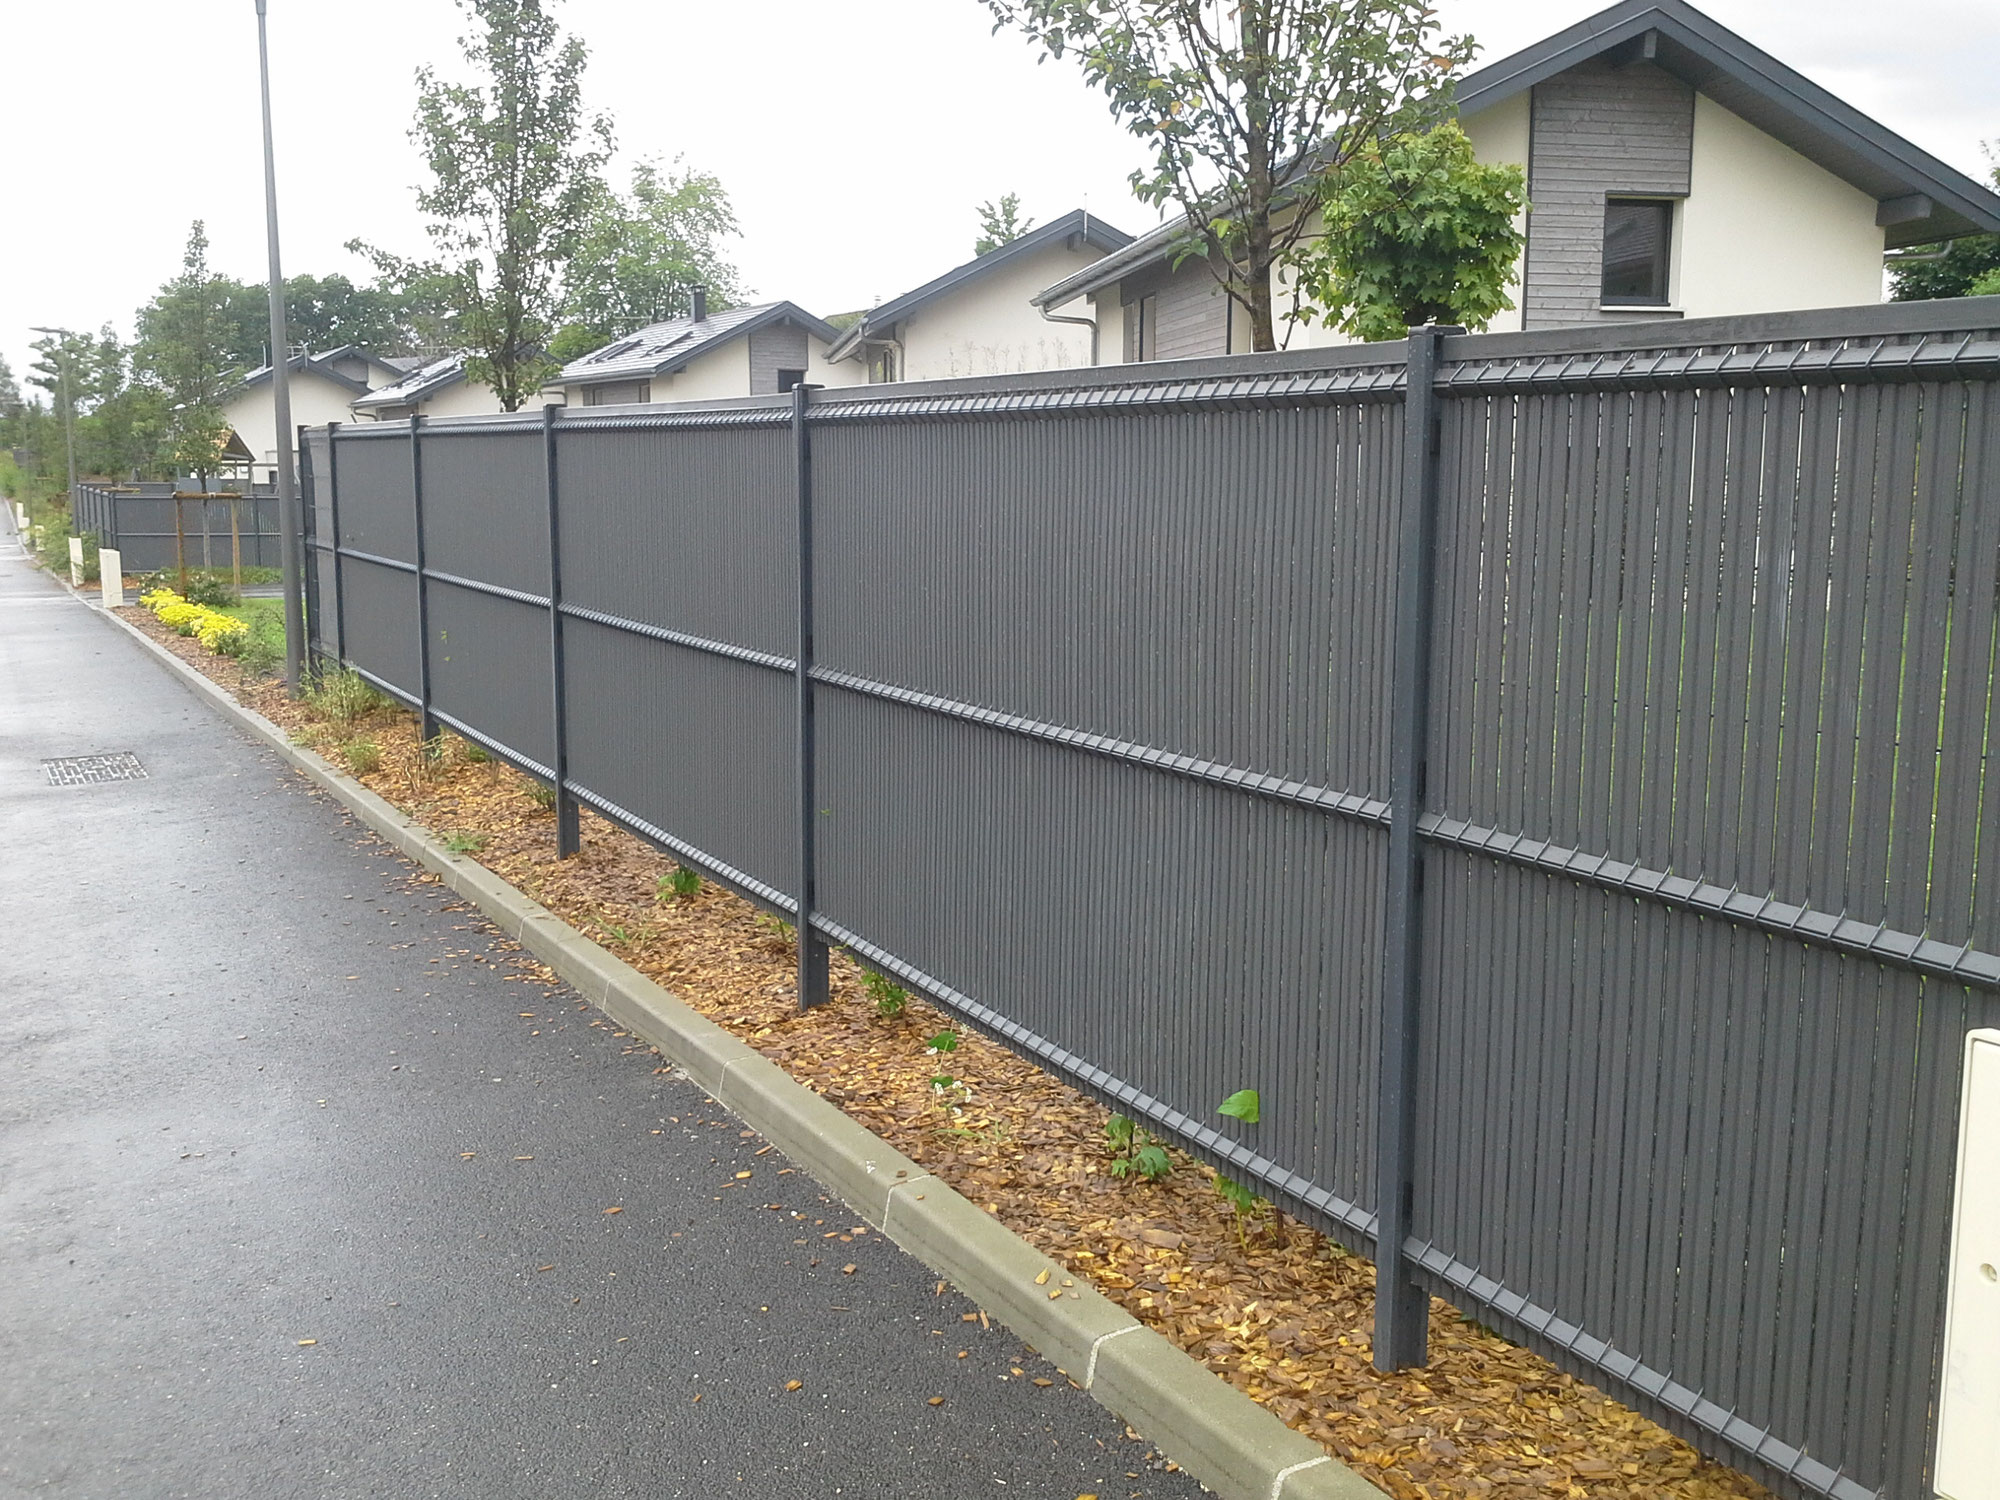 Comment choisir la clôture parfaite pour votre espace extérieur ?